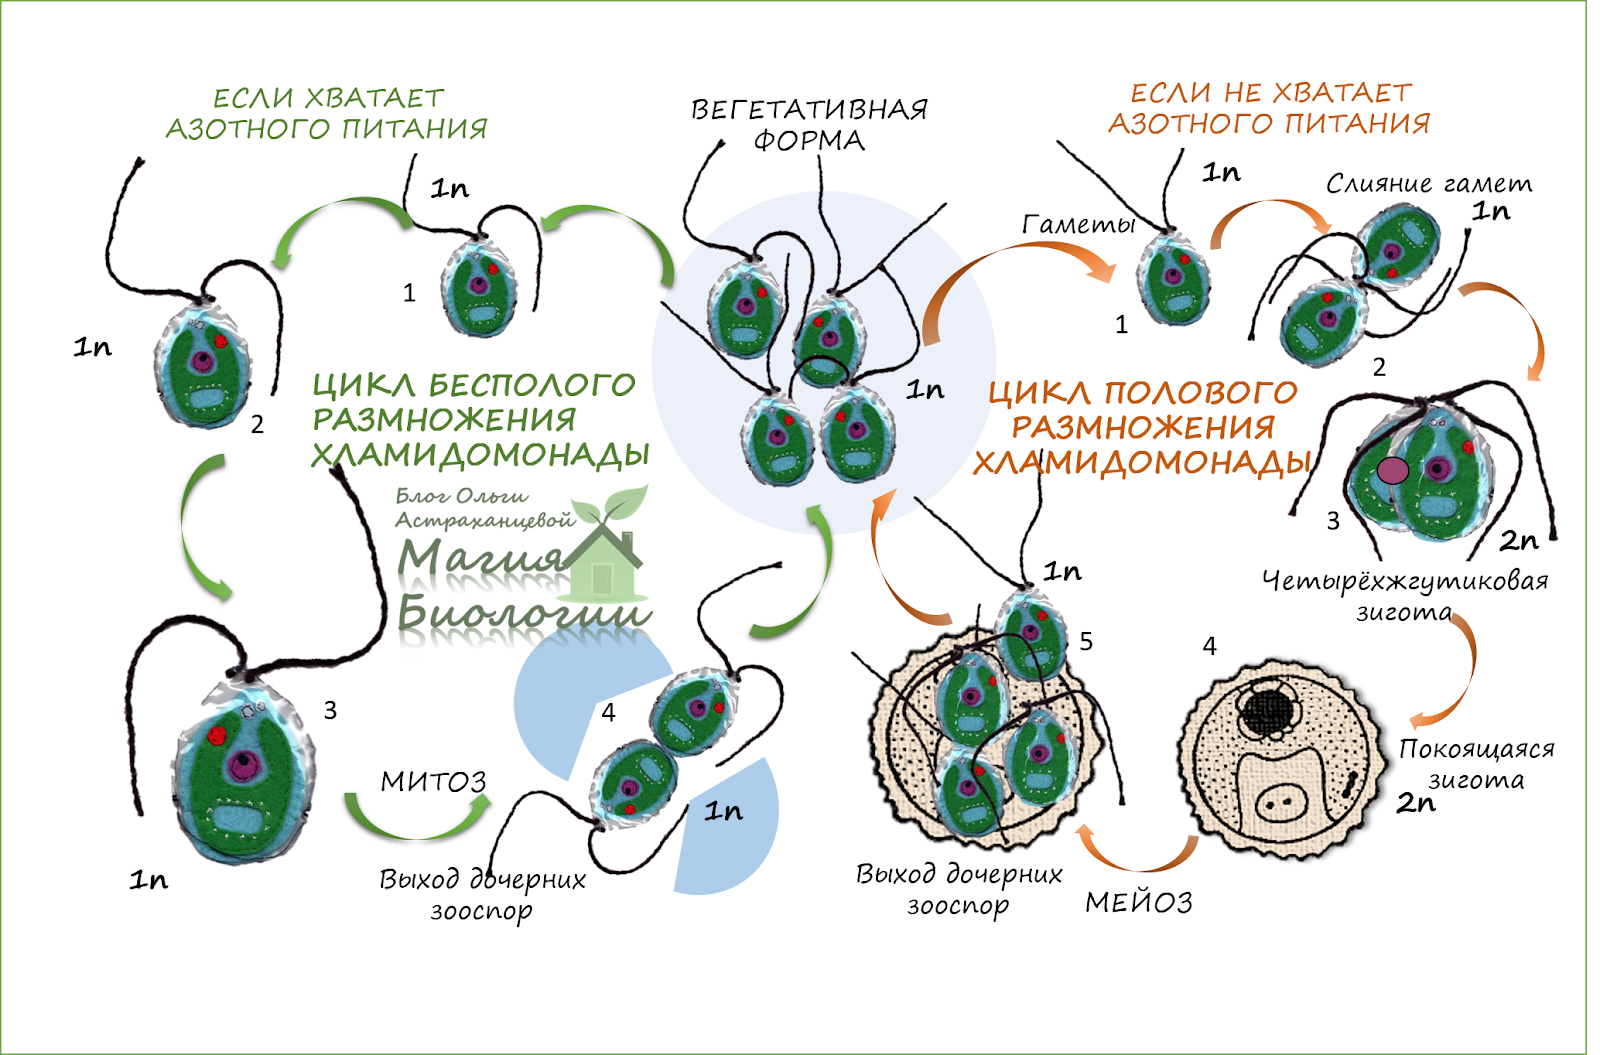 Хромосомы водорослей. Размножение водорослей хламидомонада. Жизненный цикл хламидомонады схема. Жизненный цикл хламидомонады ЕГЭ схема. Жизненный цикл водорослей хламидомонада.